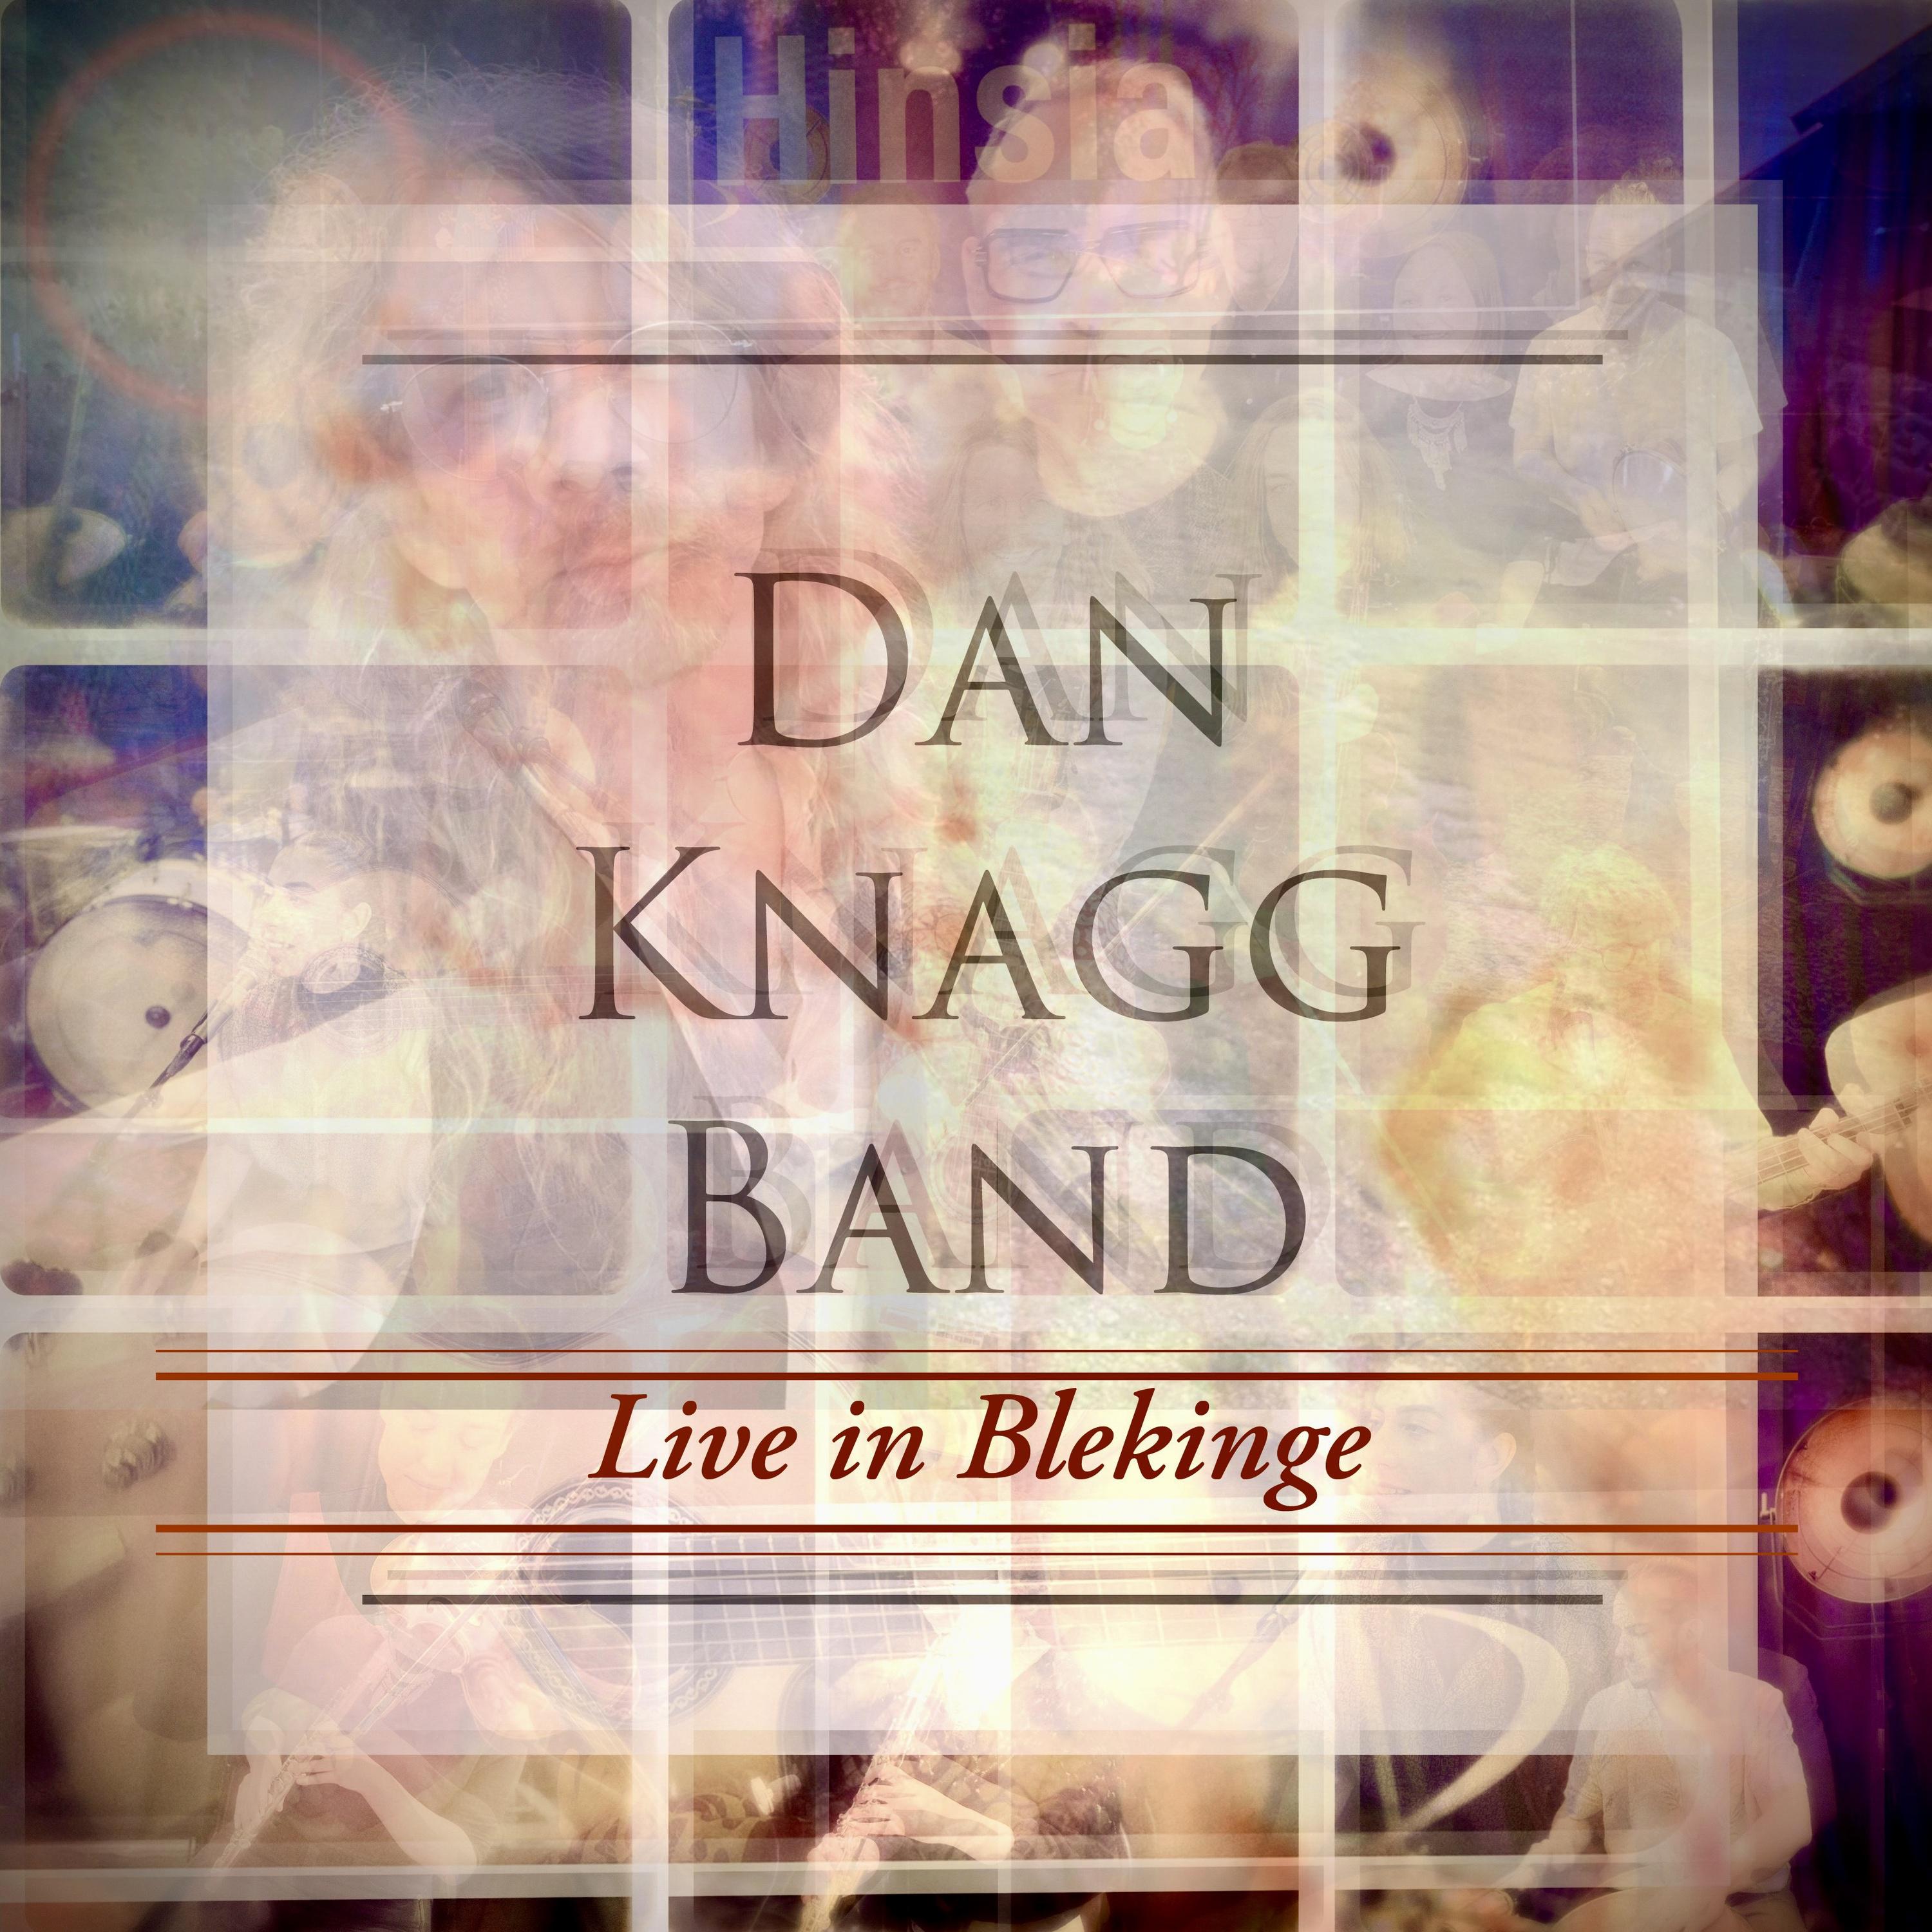 Dan Knagg Band - Tystnaden är en poet (Live)